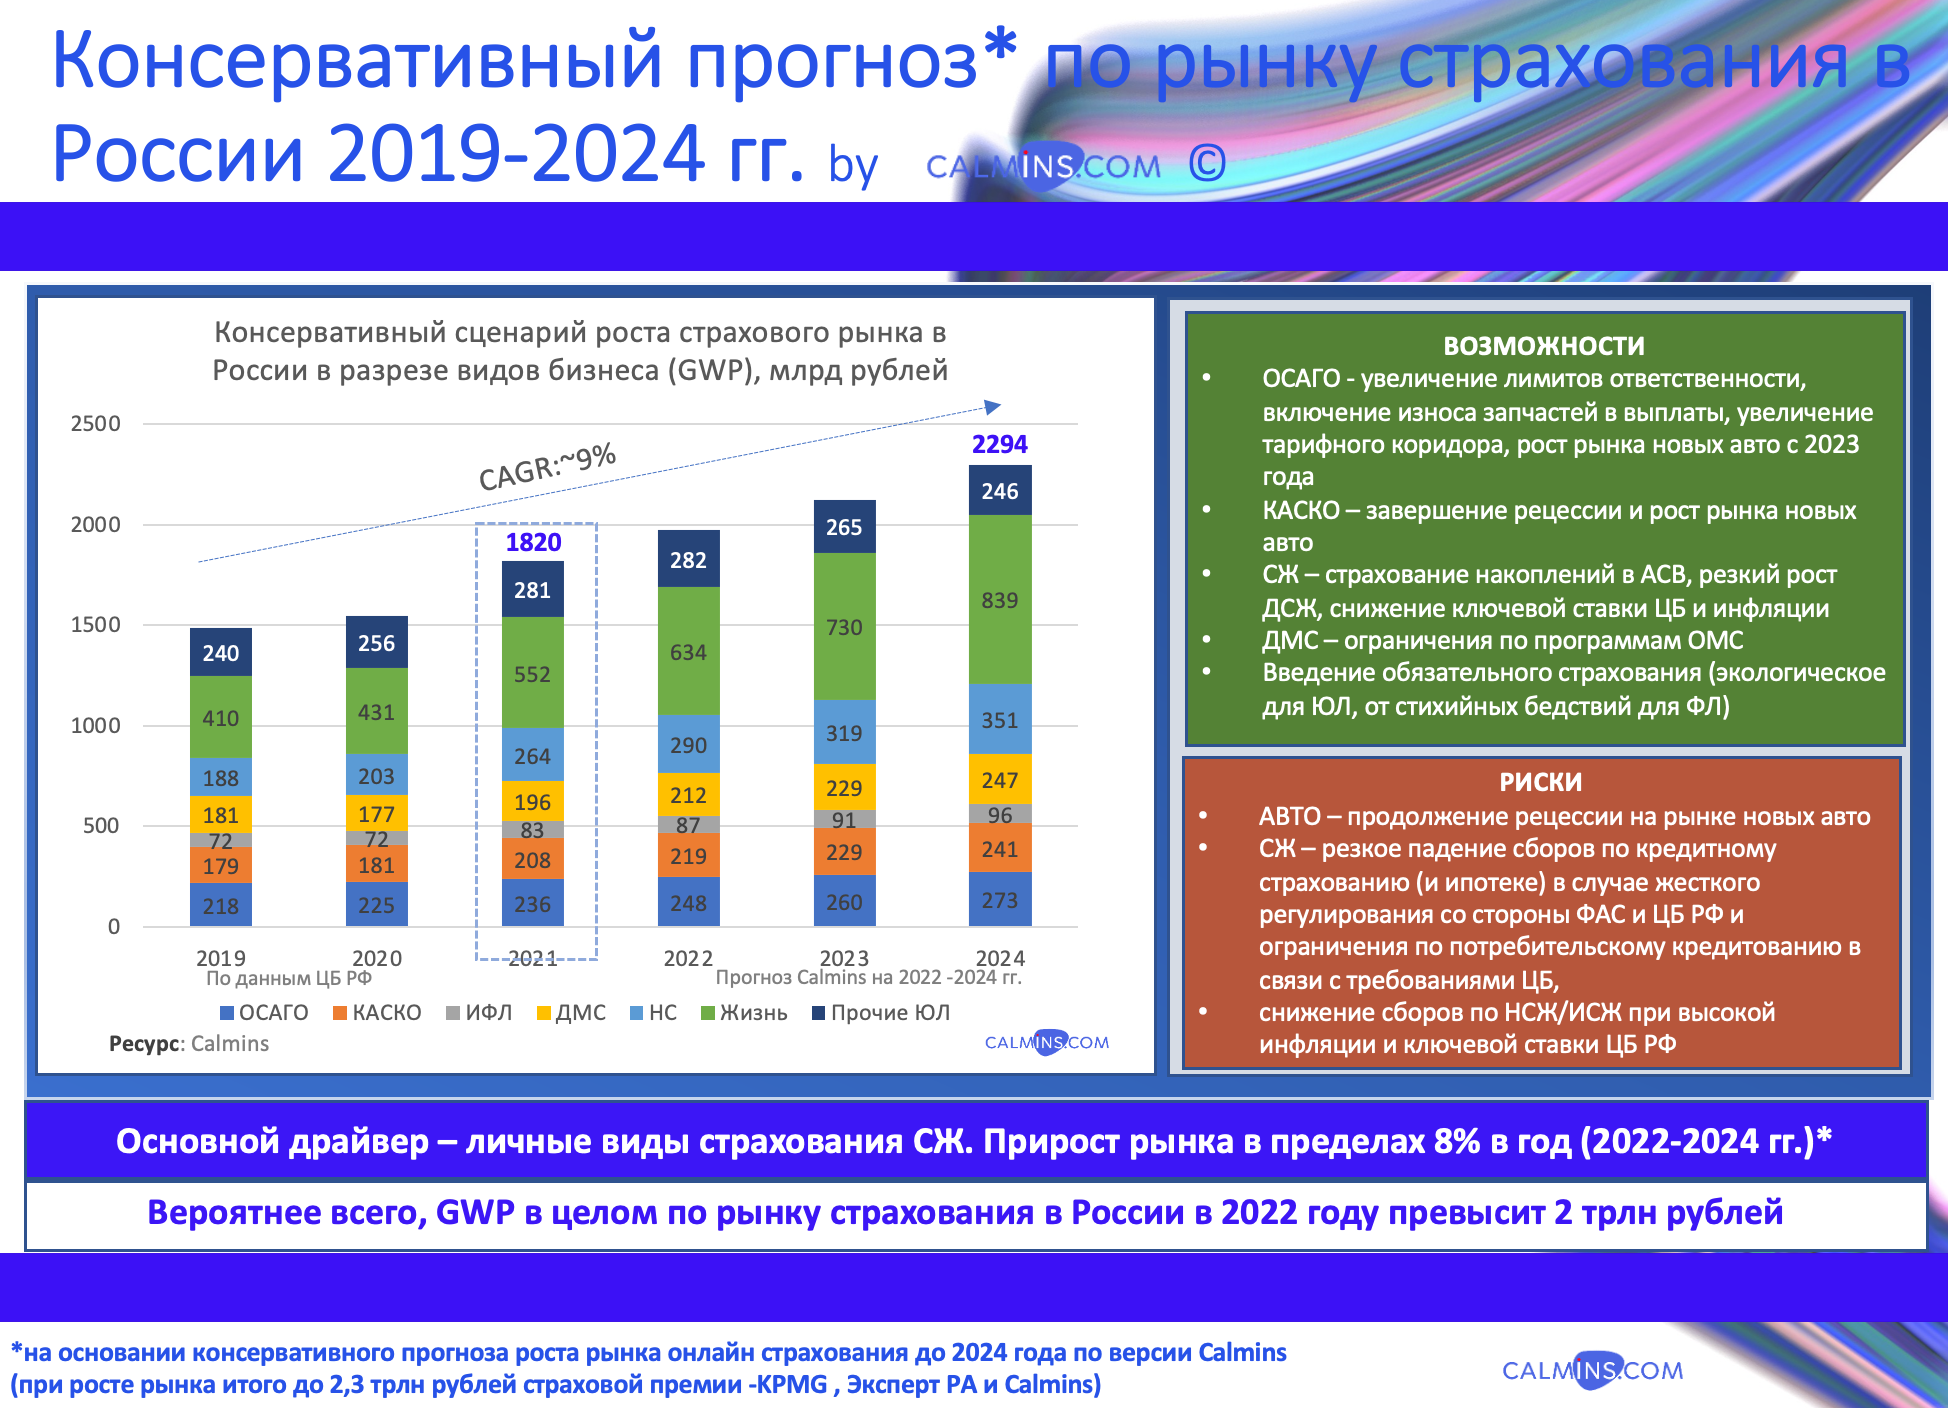 Страховые сборы в России в 2022 году превысят 2 трлн. рублей